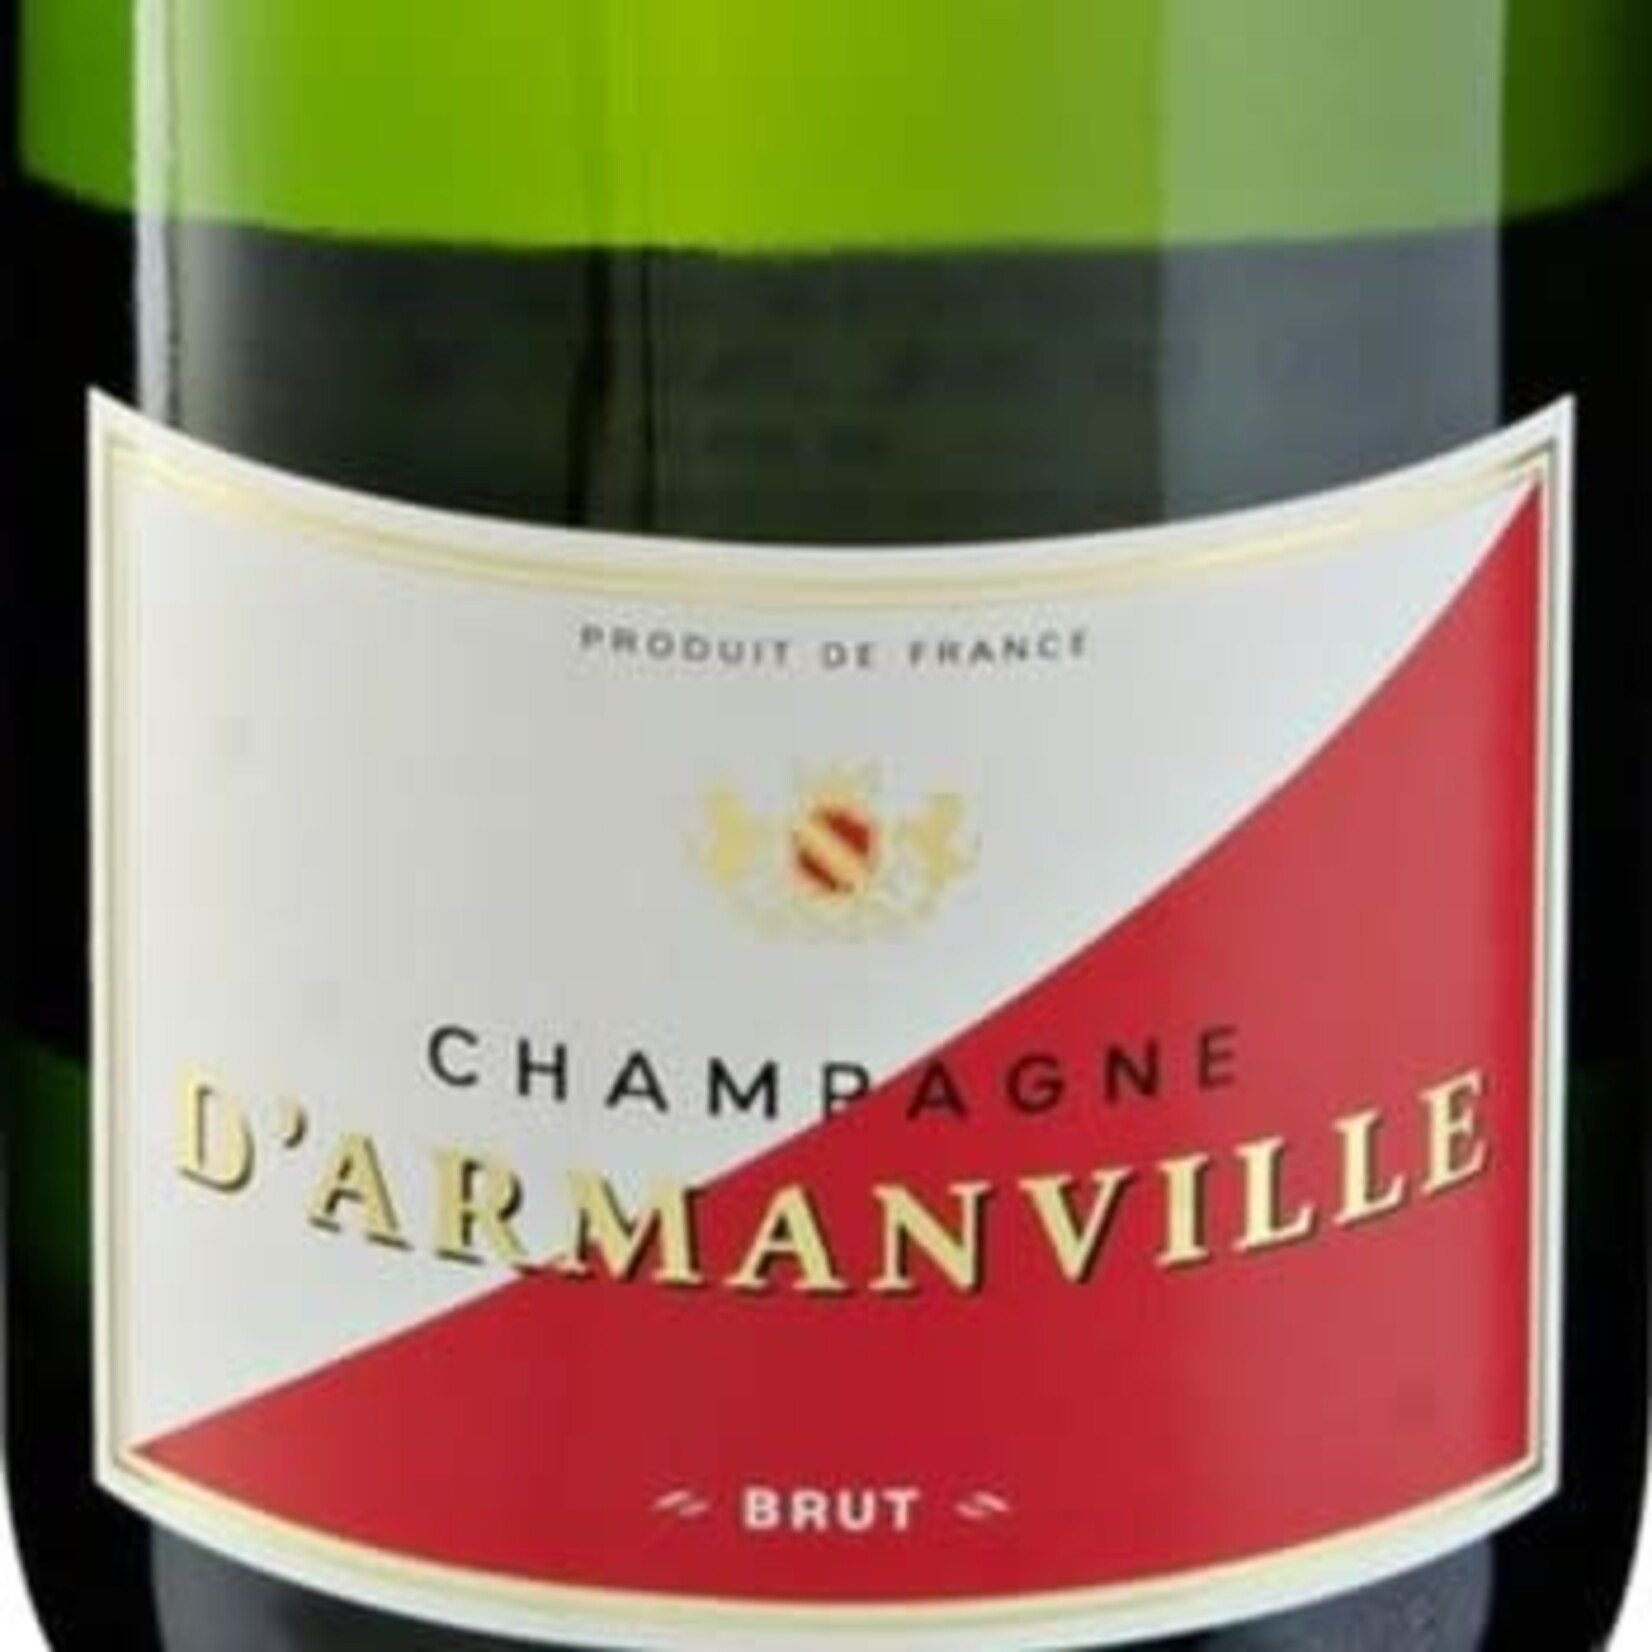 D'Armanville D'Armanville Champagne Brut  France